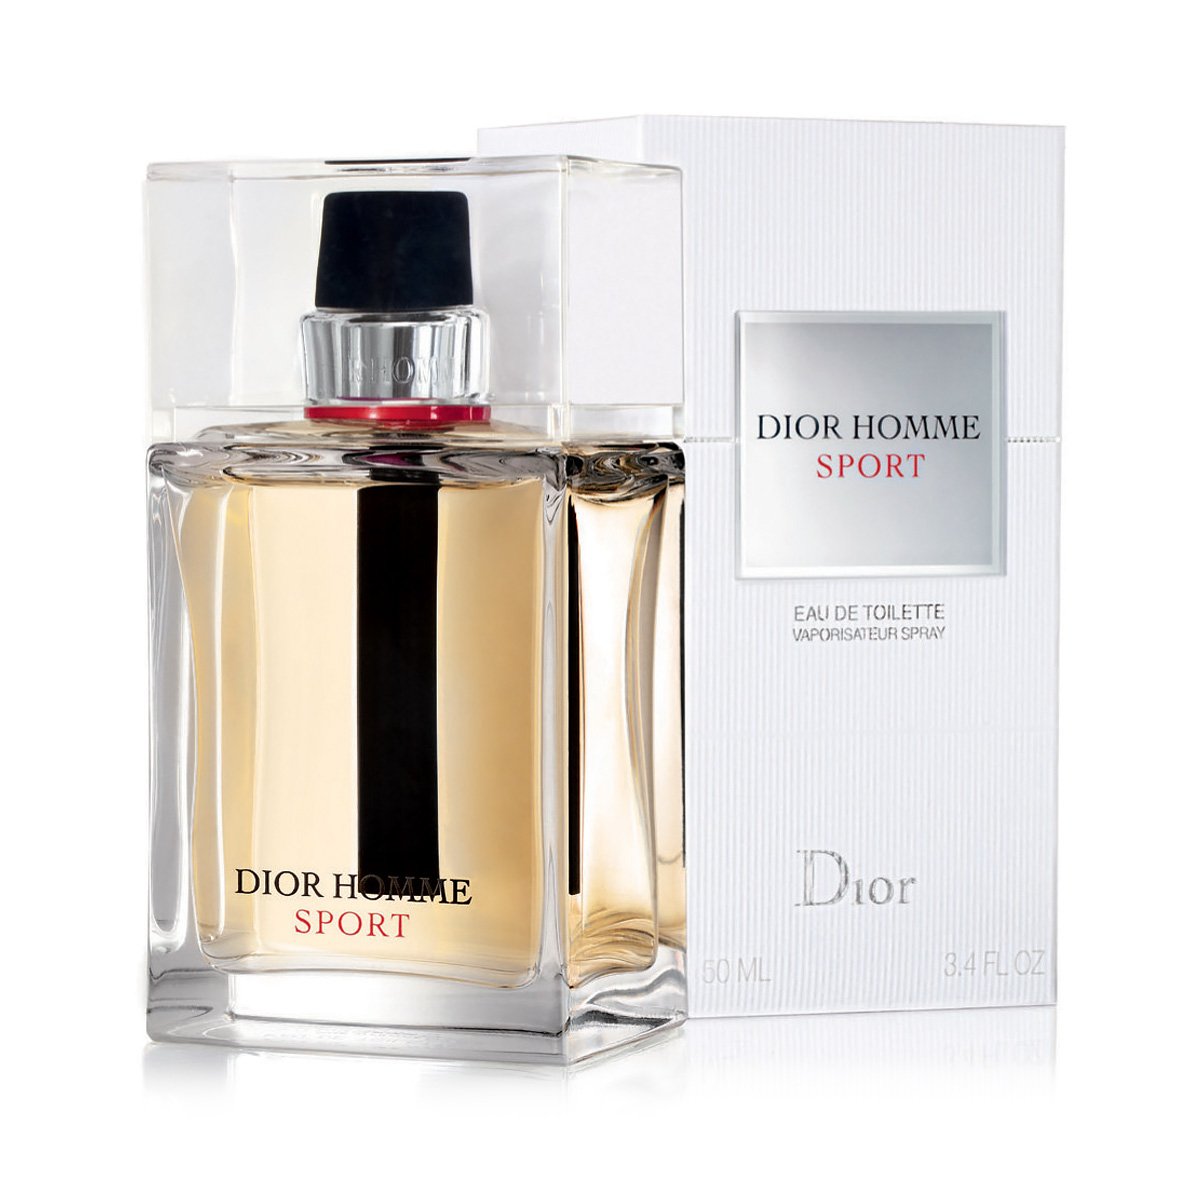 Туалетная вода хоум. Christian Dior Dior homme Sport 2017. Dior homme Sport 100ml. Christian Dior Dior homme Sport 100ml. Туалетная вода Christian Dior "Dior homme Sport", 100 ml.